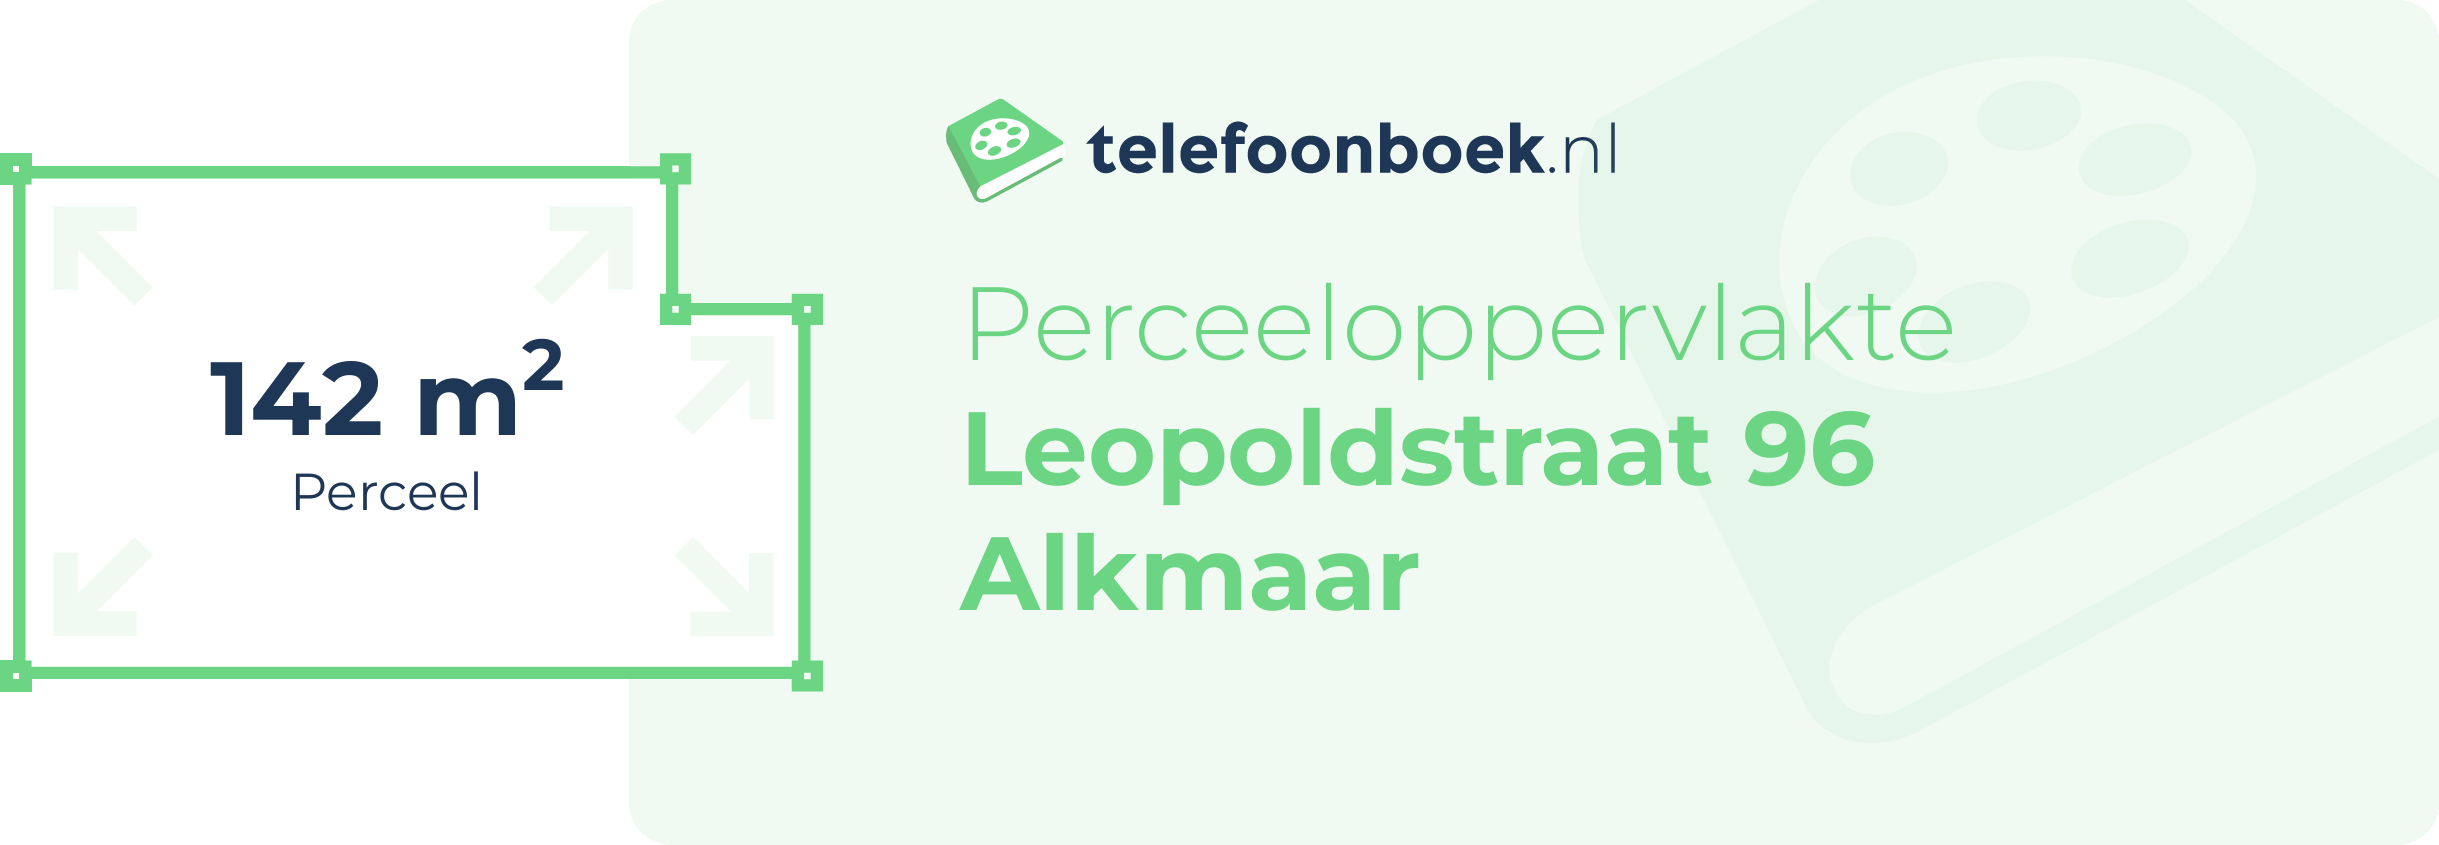 Perceeloppervlakte Leopoldstraat 96 Alkmaar